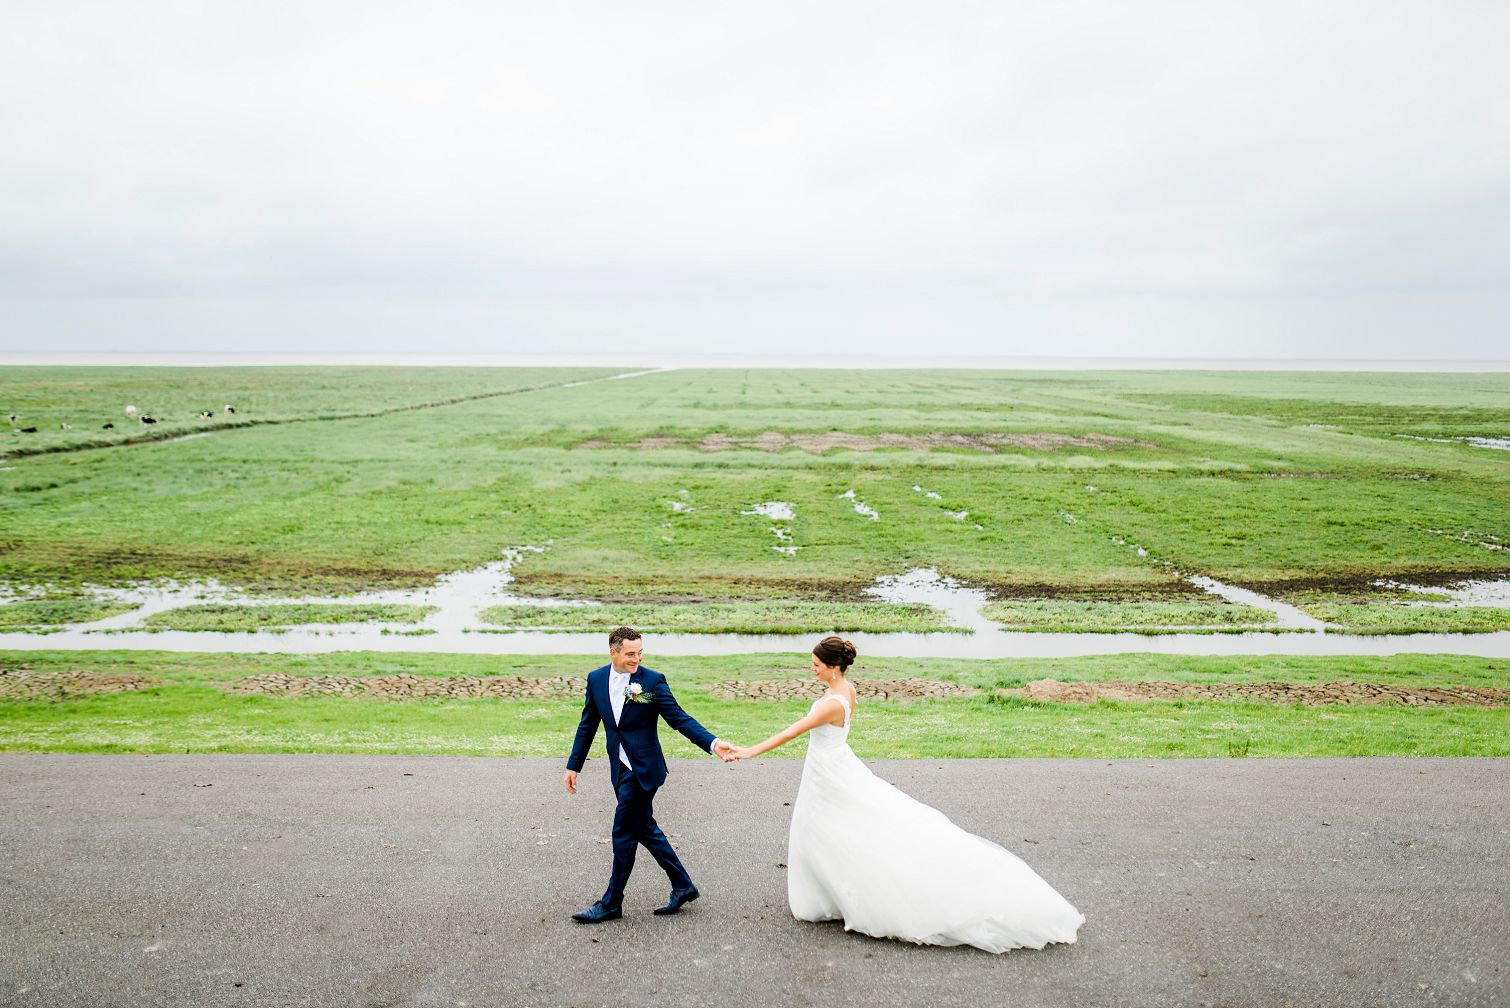 beste trouwfotograaf 2017, Lauwersoog, dijken, trouwen